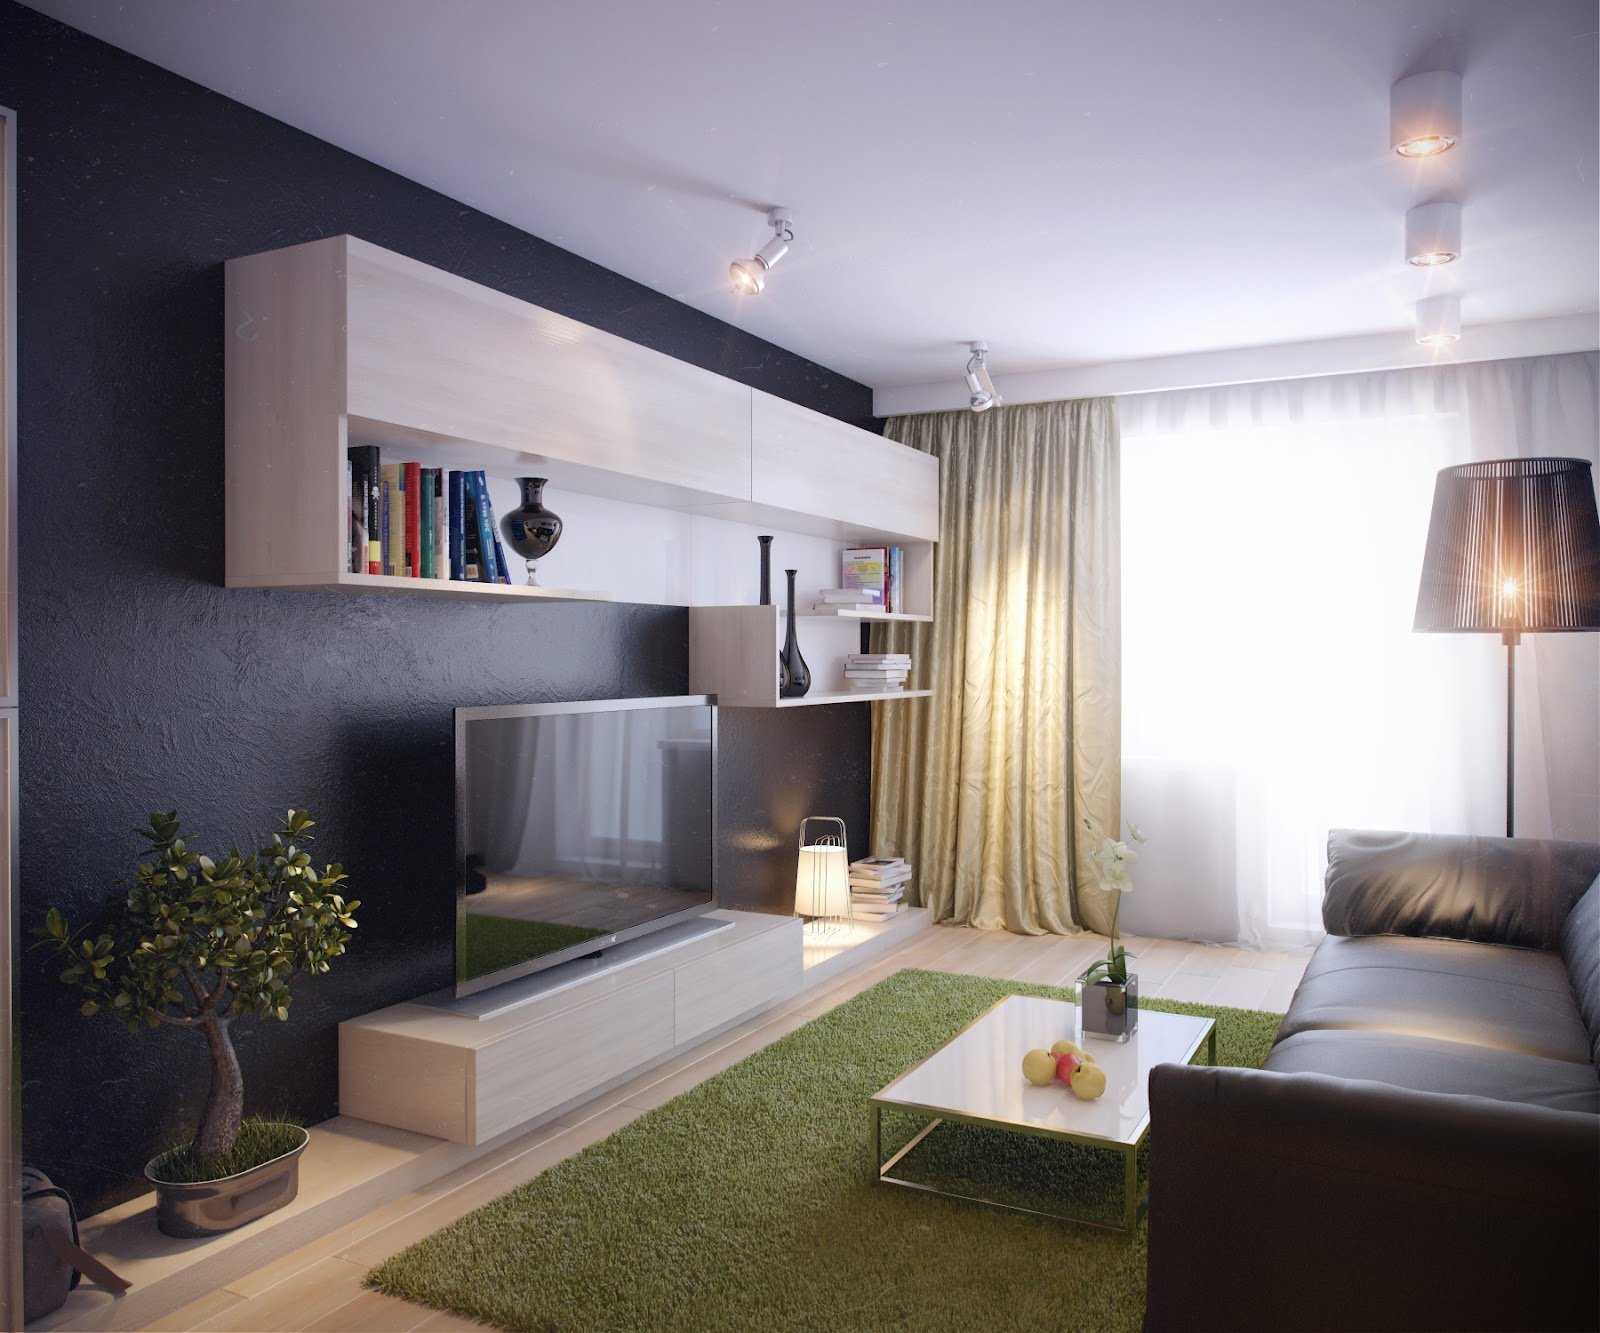 Гостиная 15 кв. м: дизайн и интерьер, современные стили комнаты в обычной квартире, реальные фото, новинки